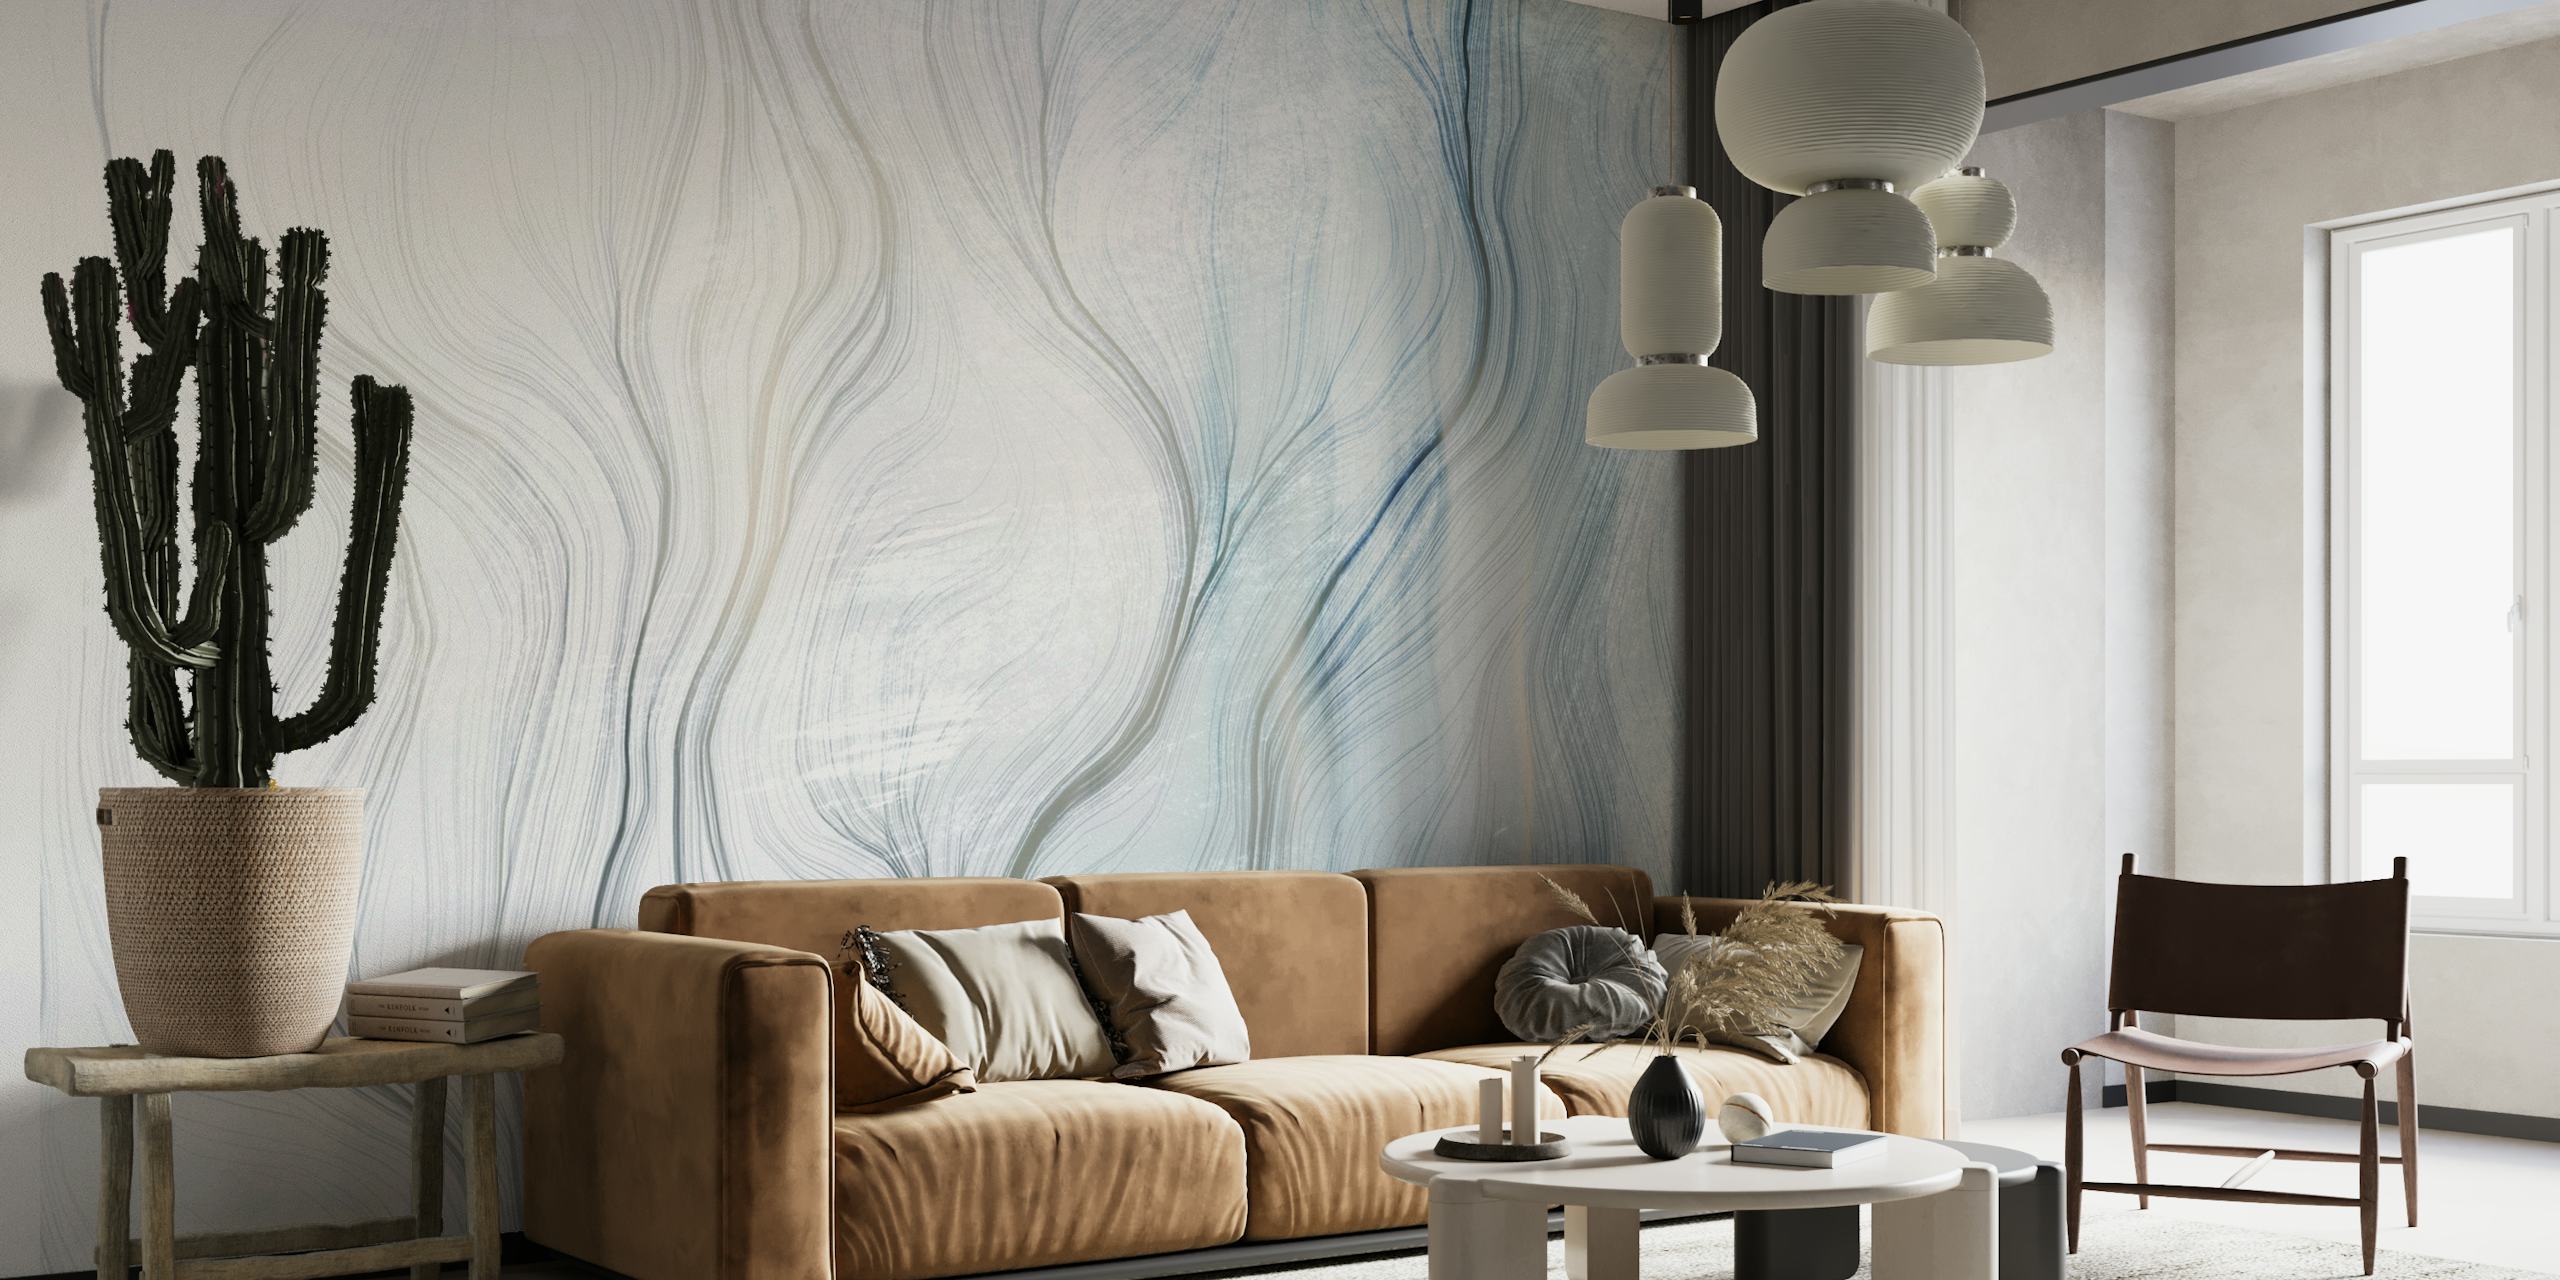 Abstraktní nástěnná malba s jemnými křivkami a přechodovými odstíny modré a šedé vytvářející poklidnou atmosféru